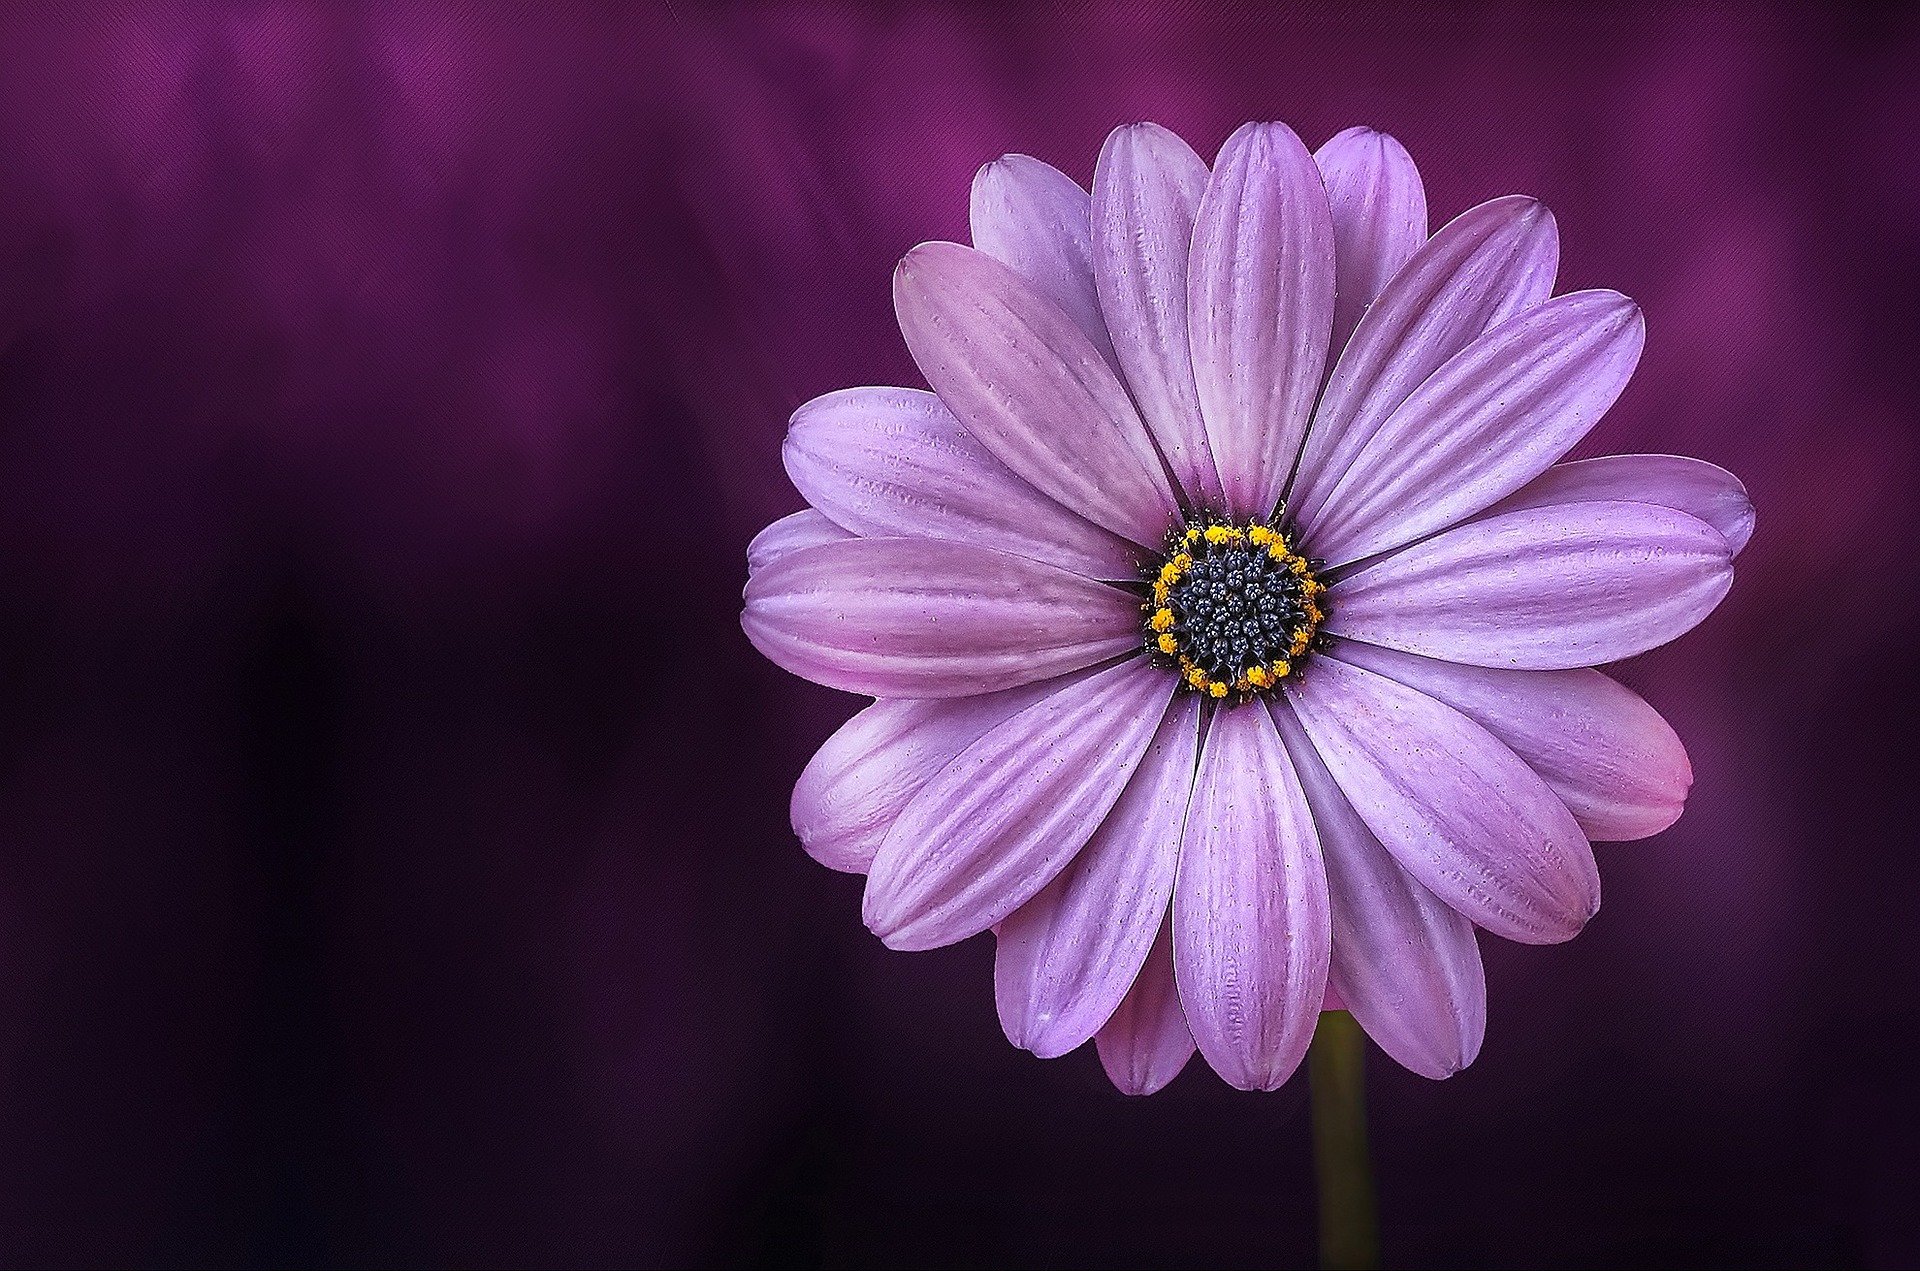 alt text: Imagem com foco em uma flor lilás à direita. O fundo é desfocado e tem um tom de roxo mais escuro.